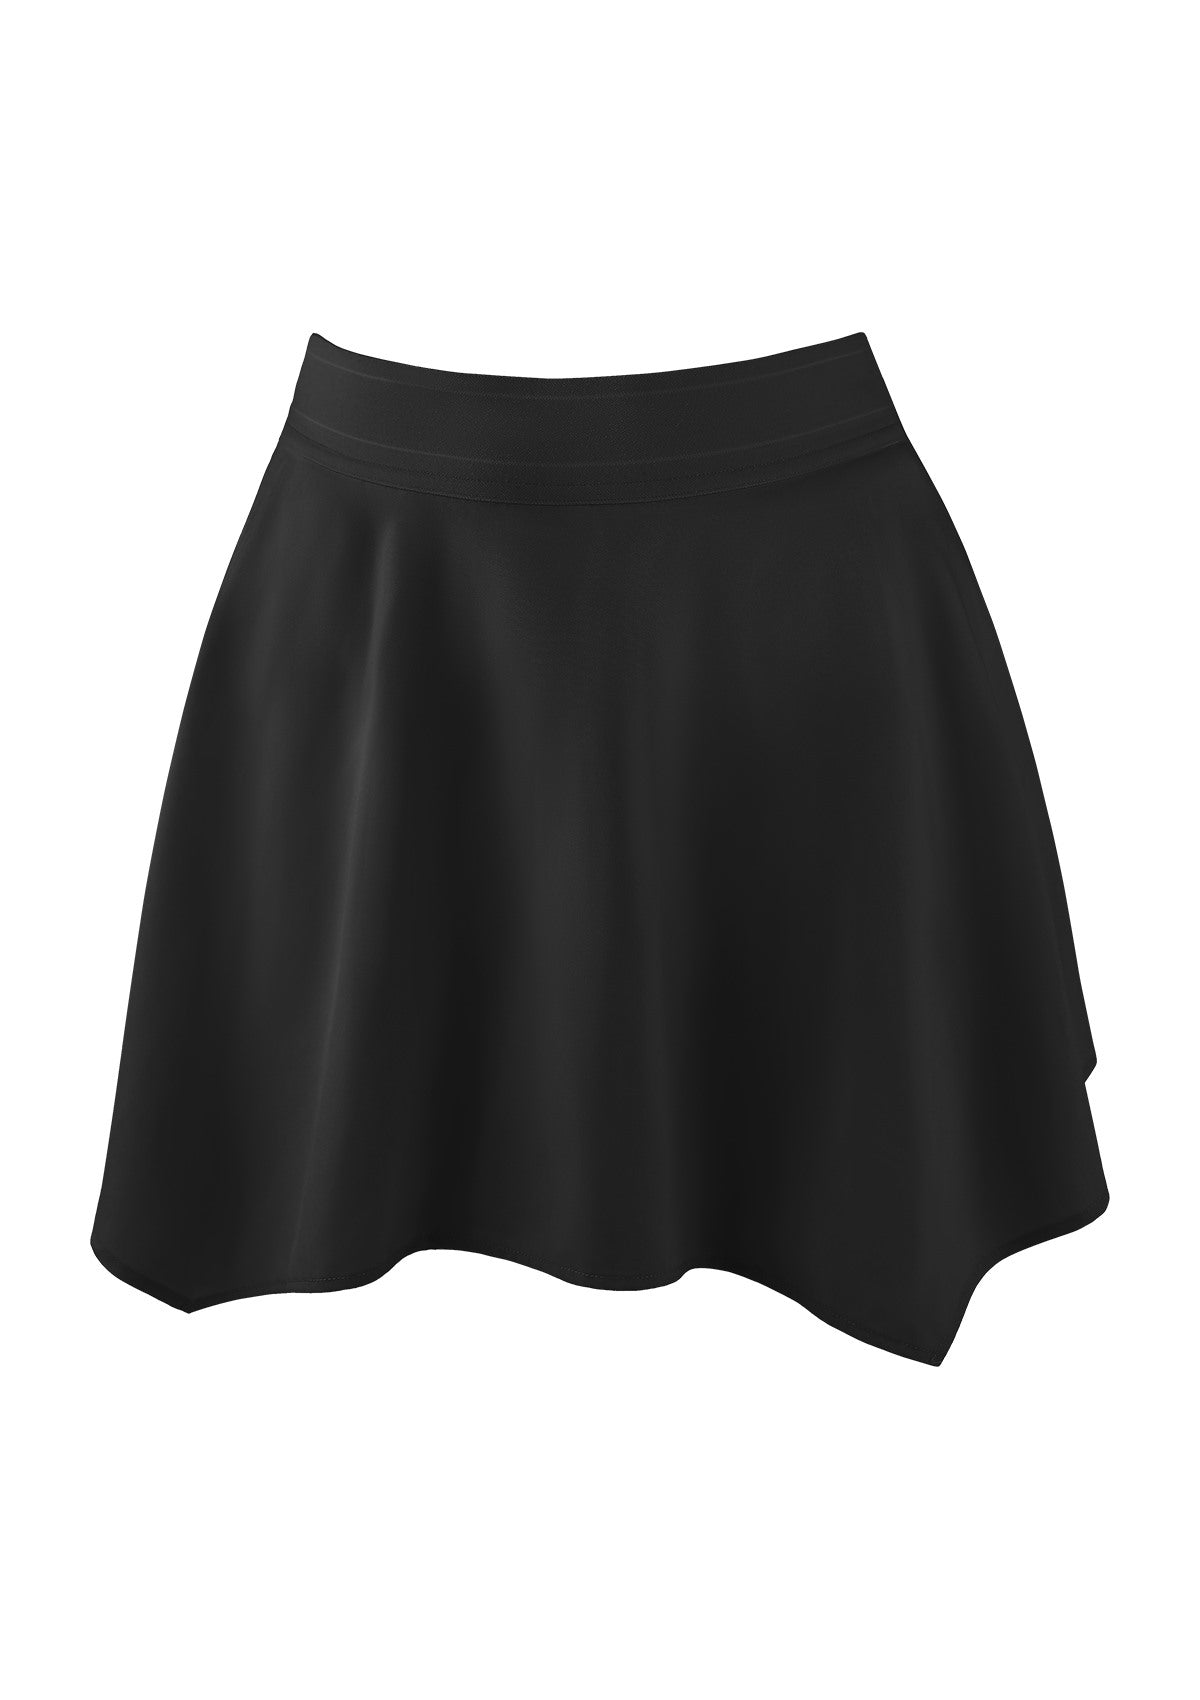 Speed Race High-Rise Sports Tennis Skirt - Black / XL